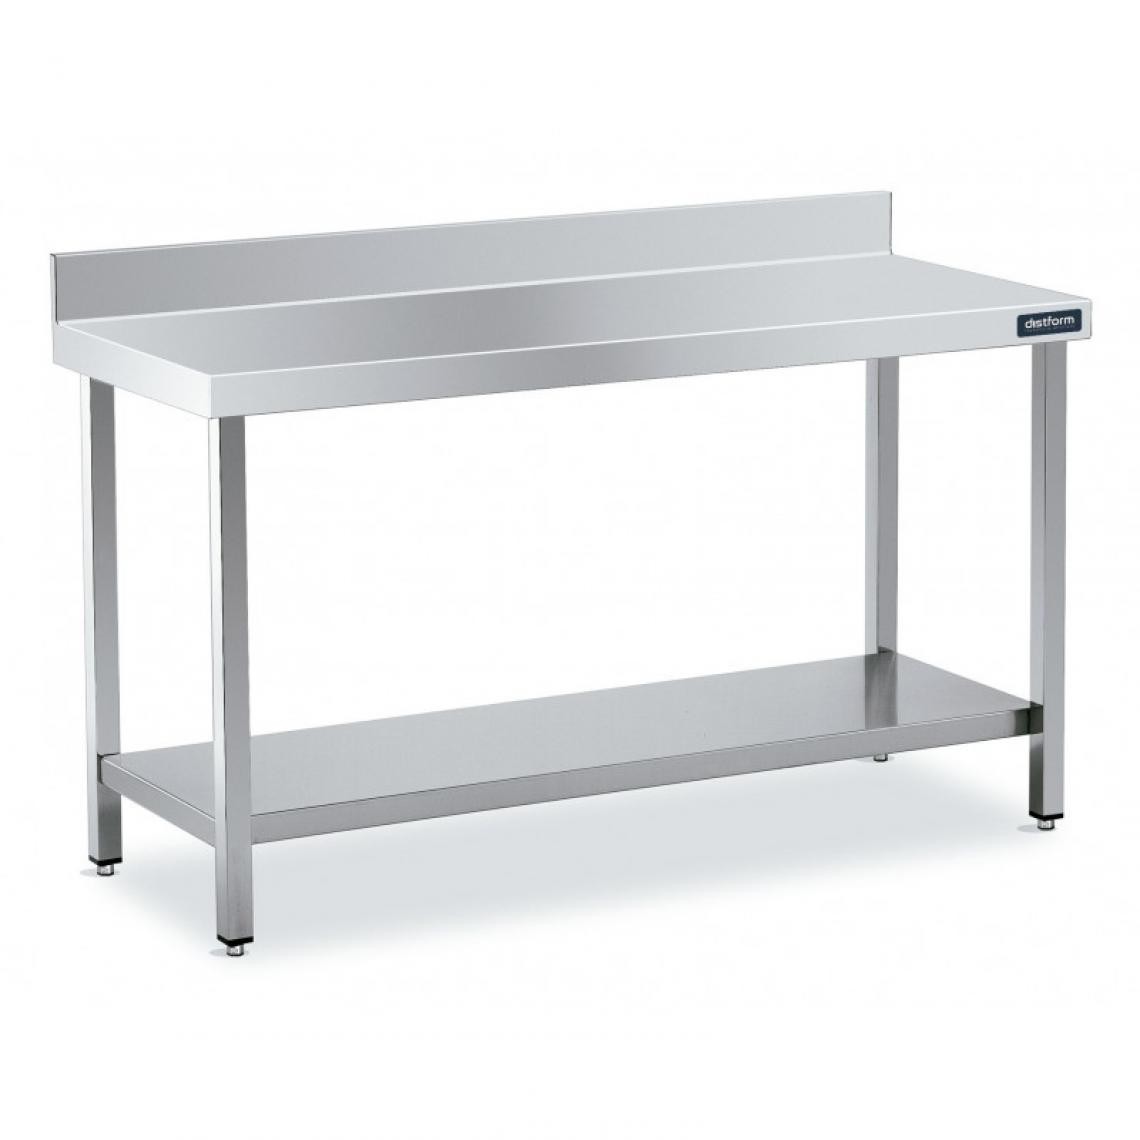 DISTFORM - Table Adossée en Inox avec 1 étagère Profondeur 700 mm - Distform - Acier inoxydable800x700 - Tables à manger